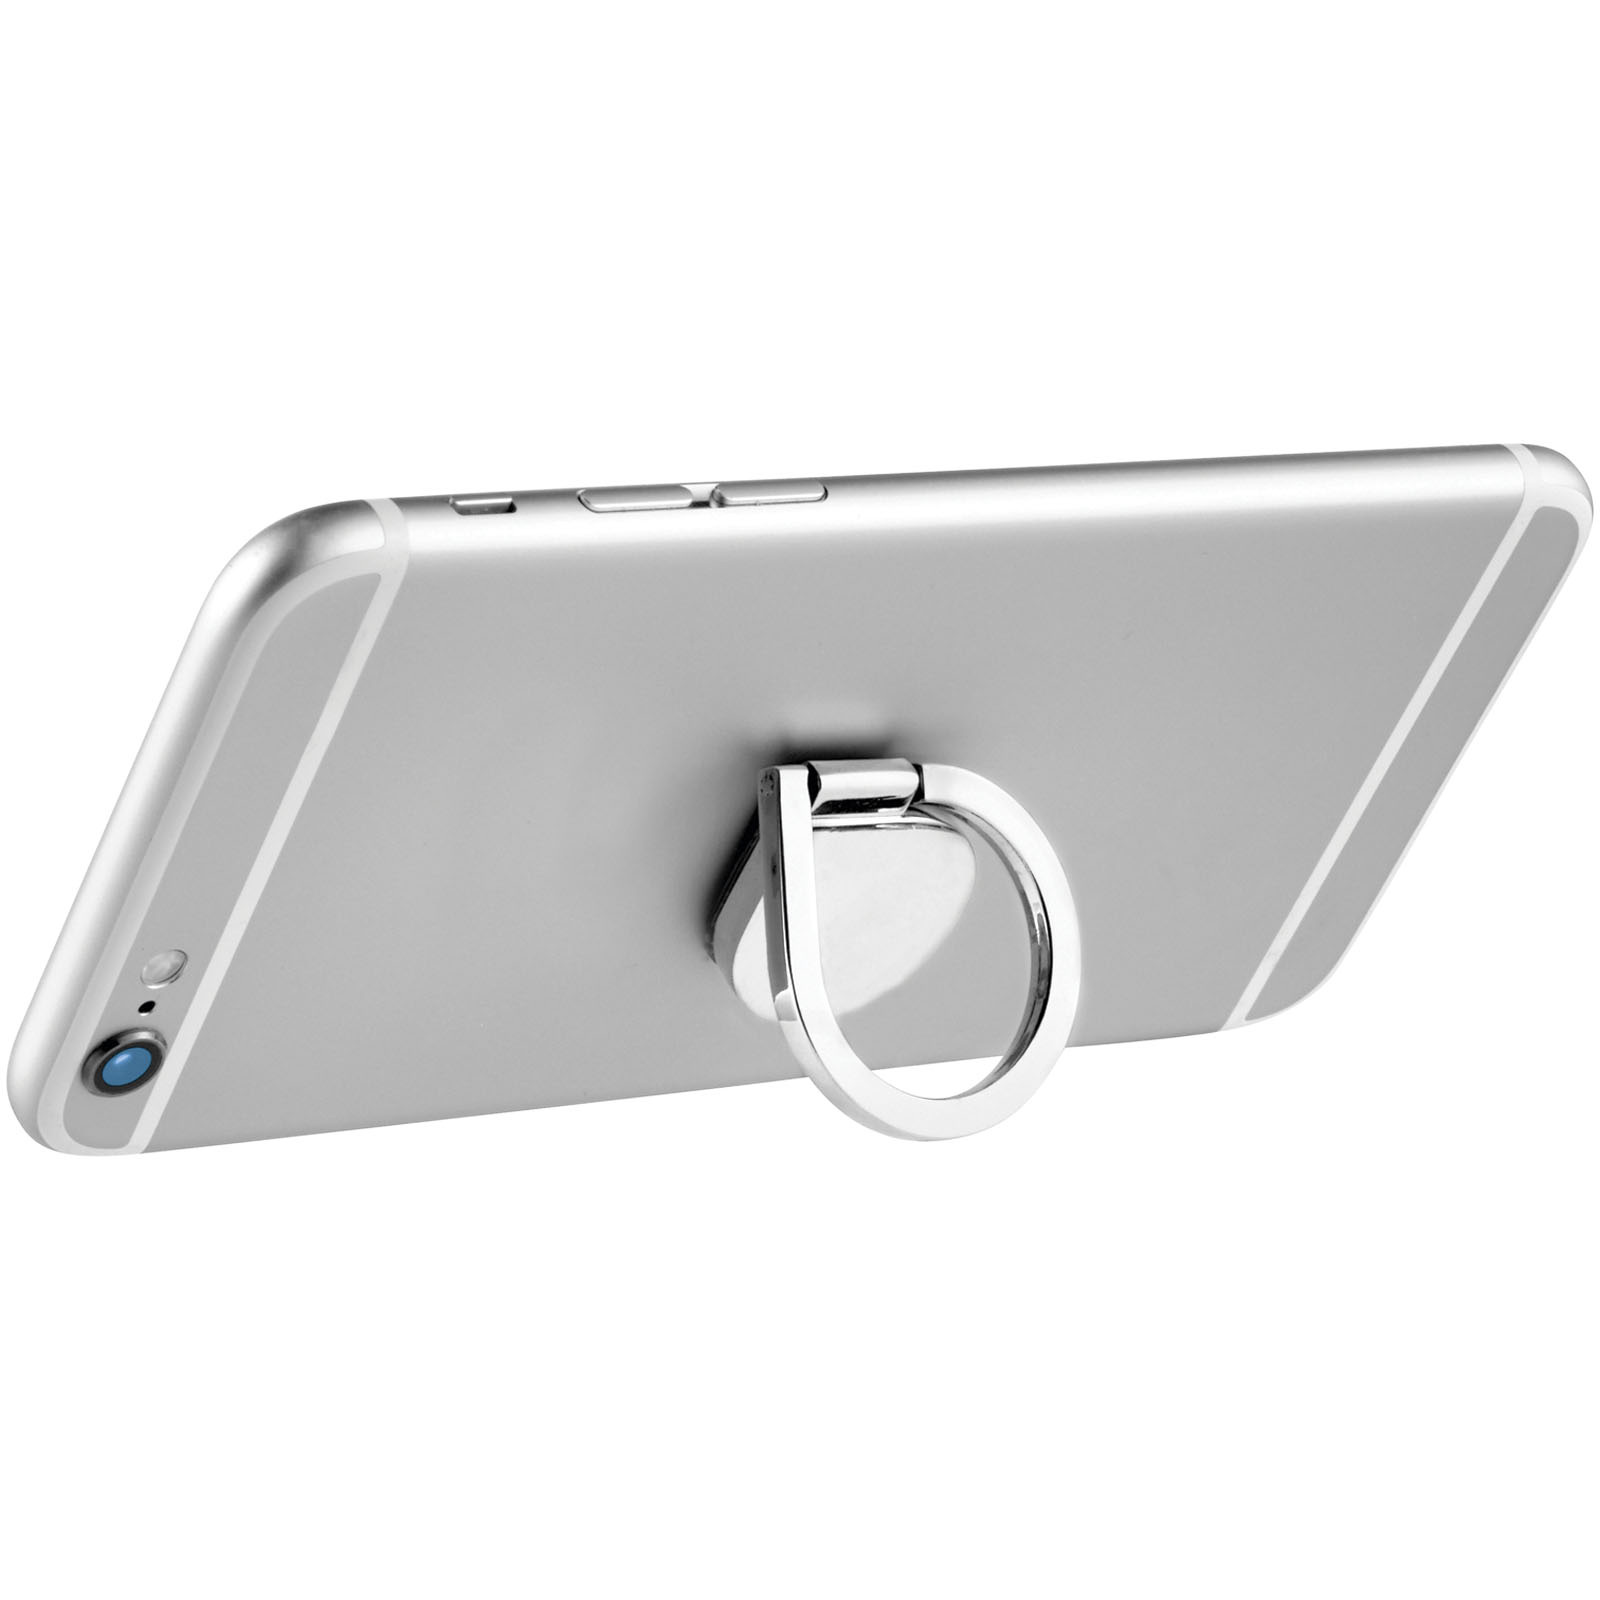 Accessoires pour téléphone et tablette publicitaires - Support de téléphone avec anneau en aluminium Cell